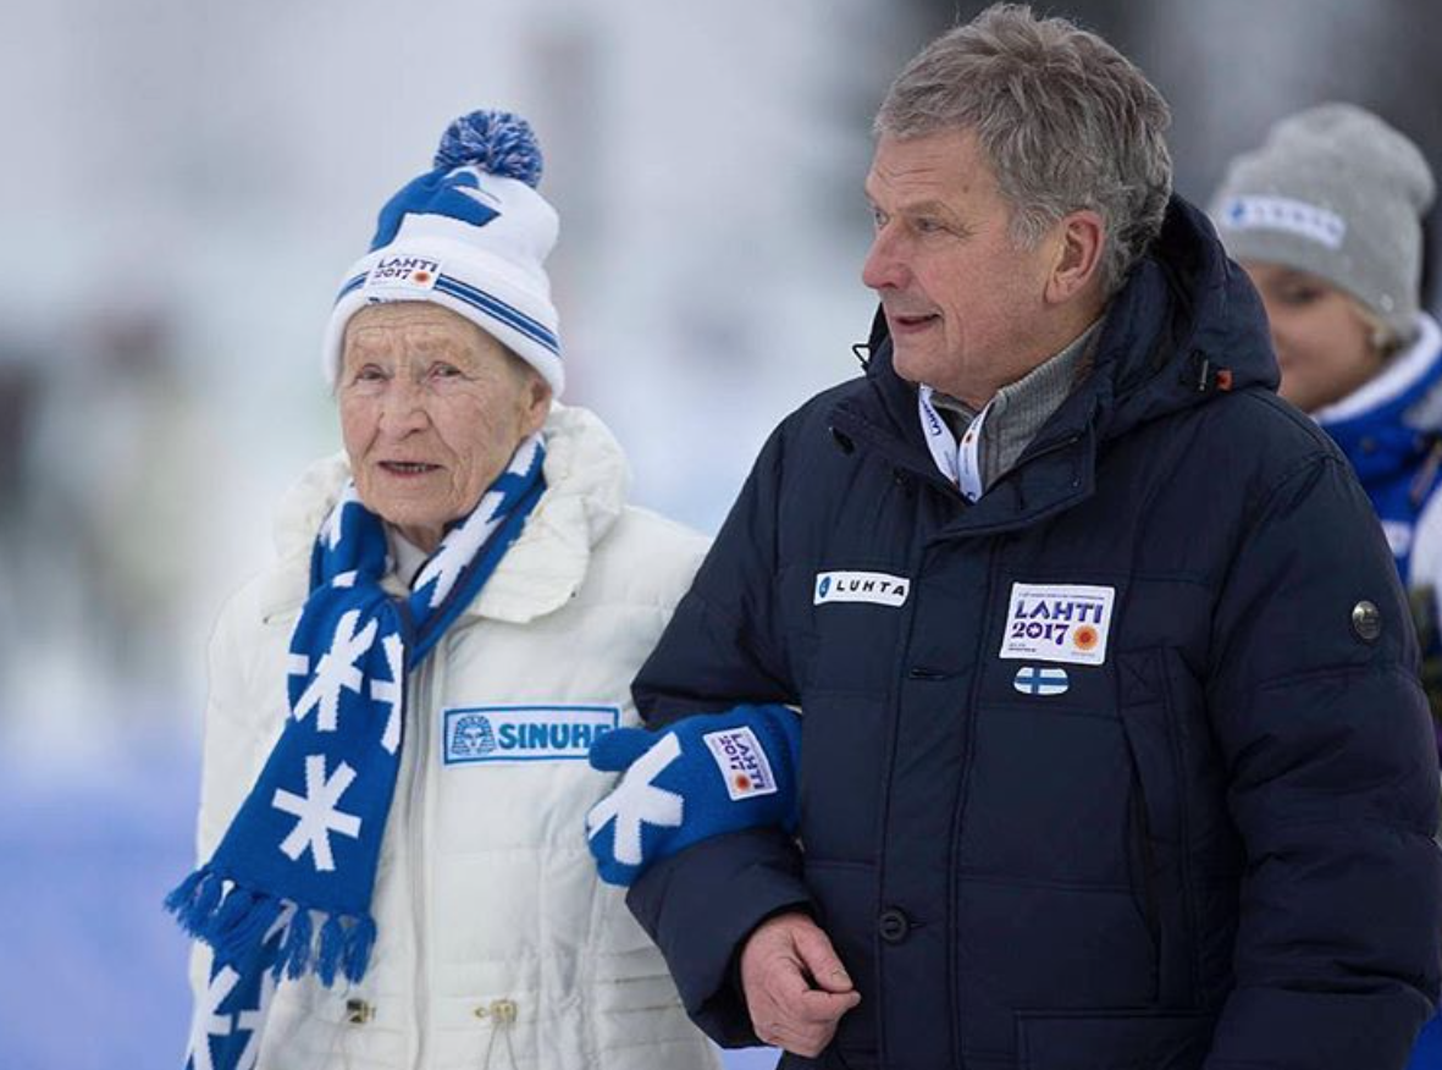 Soome suusalegend Siiri Rantanen ja president Sauli Niinistö Lahti MM-il 2017